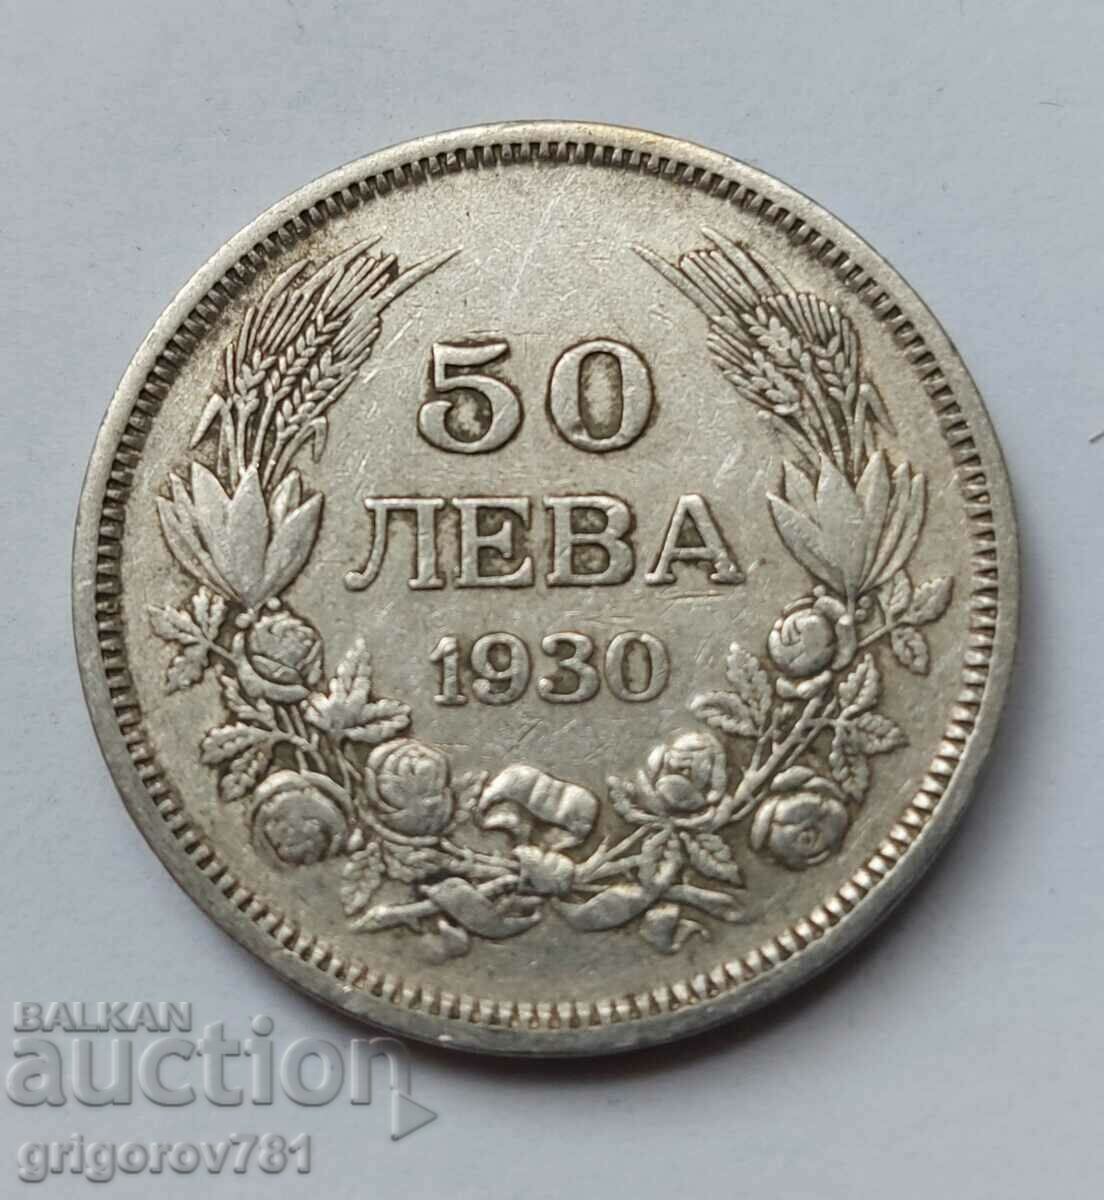 Ασήμι 50 λέβα Βουλγαρία 1930 - ασημένιο νόμισμα #63